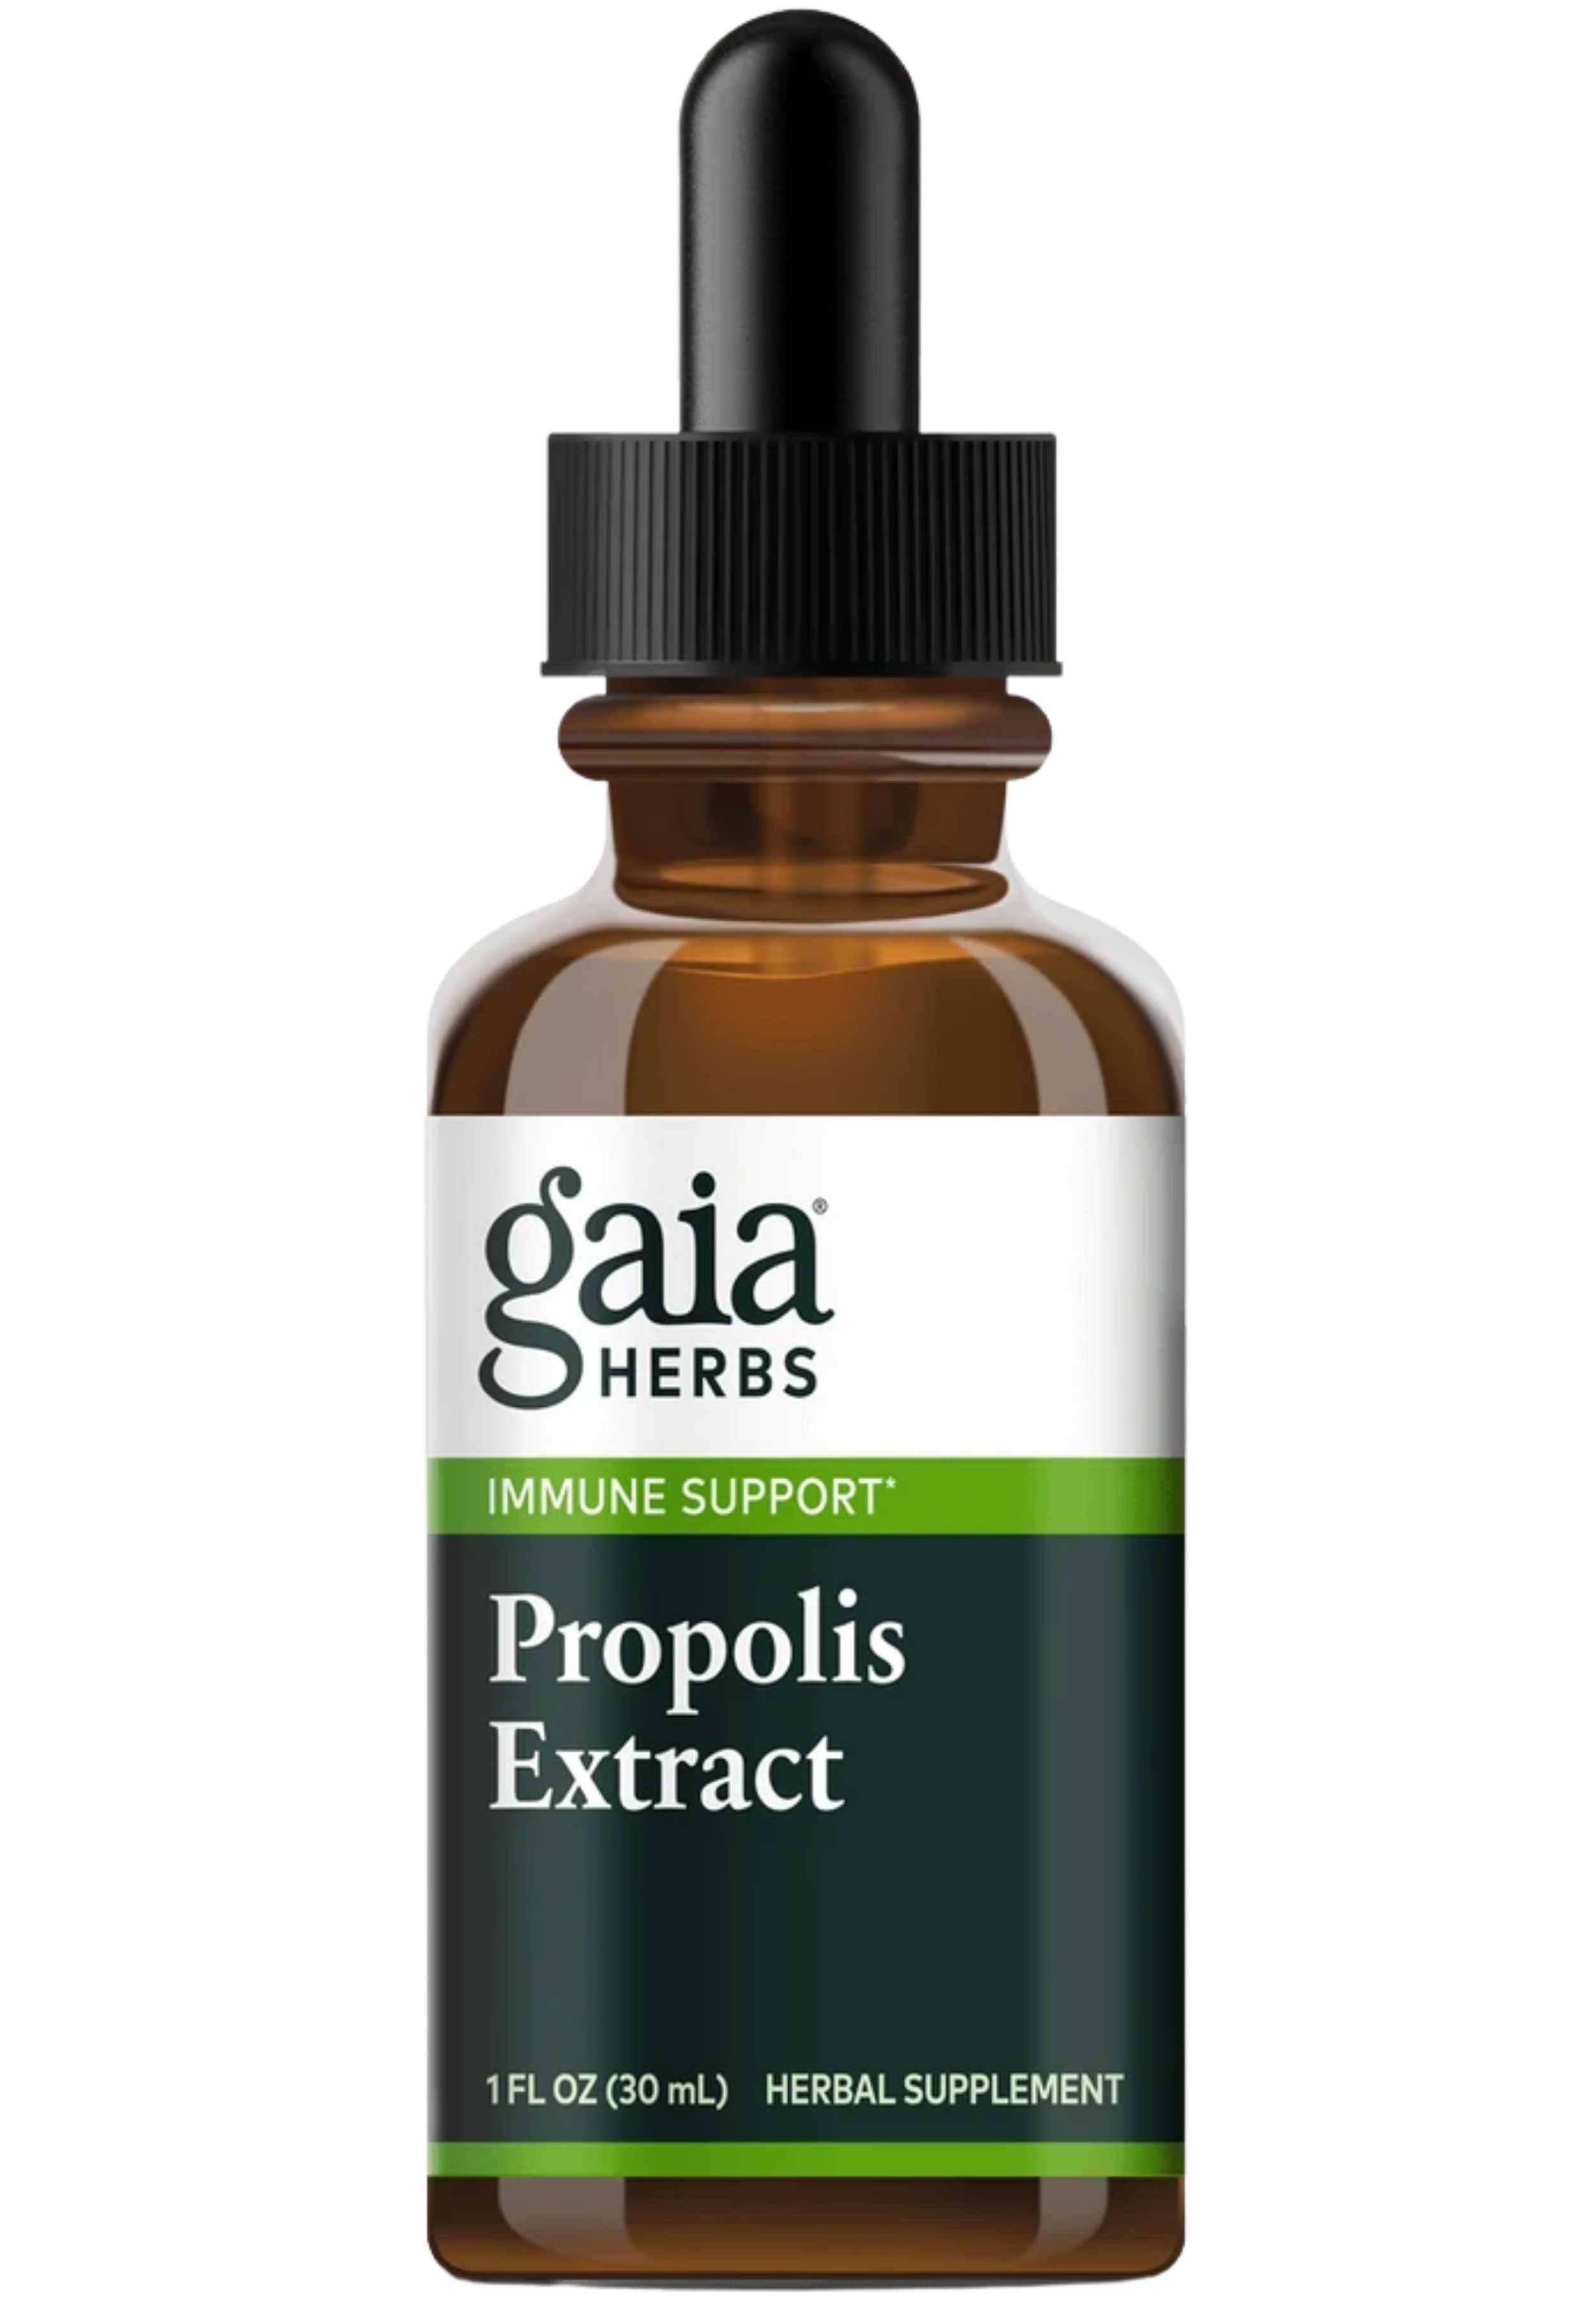 Gaia Herbs Propolis Extract - 1 fl oz